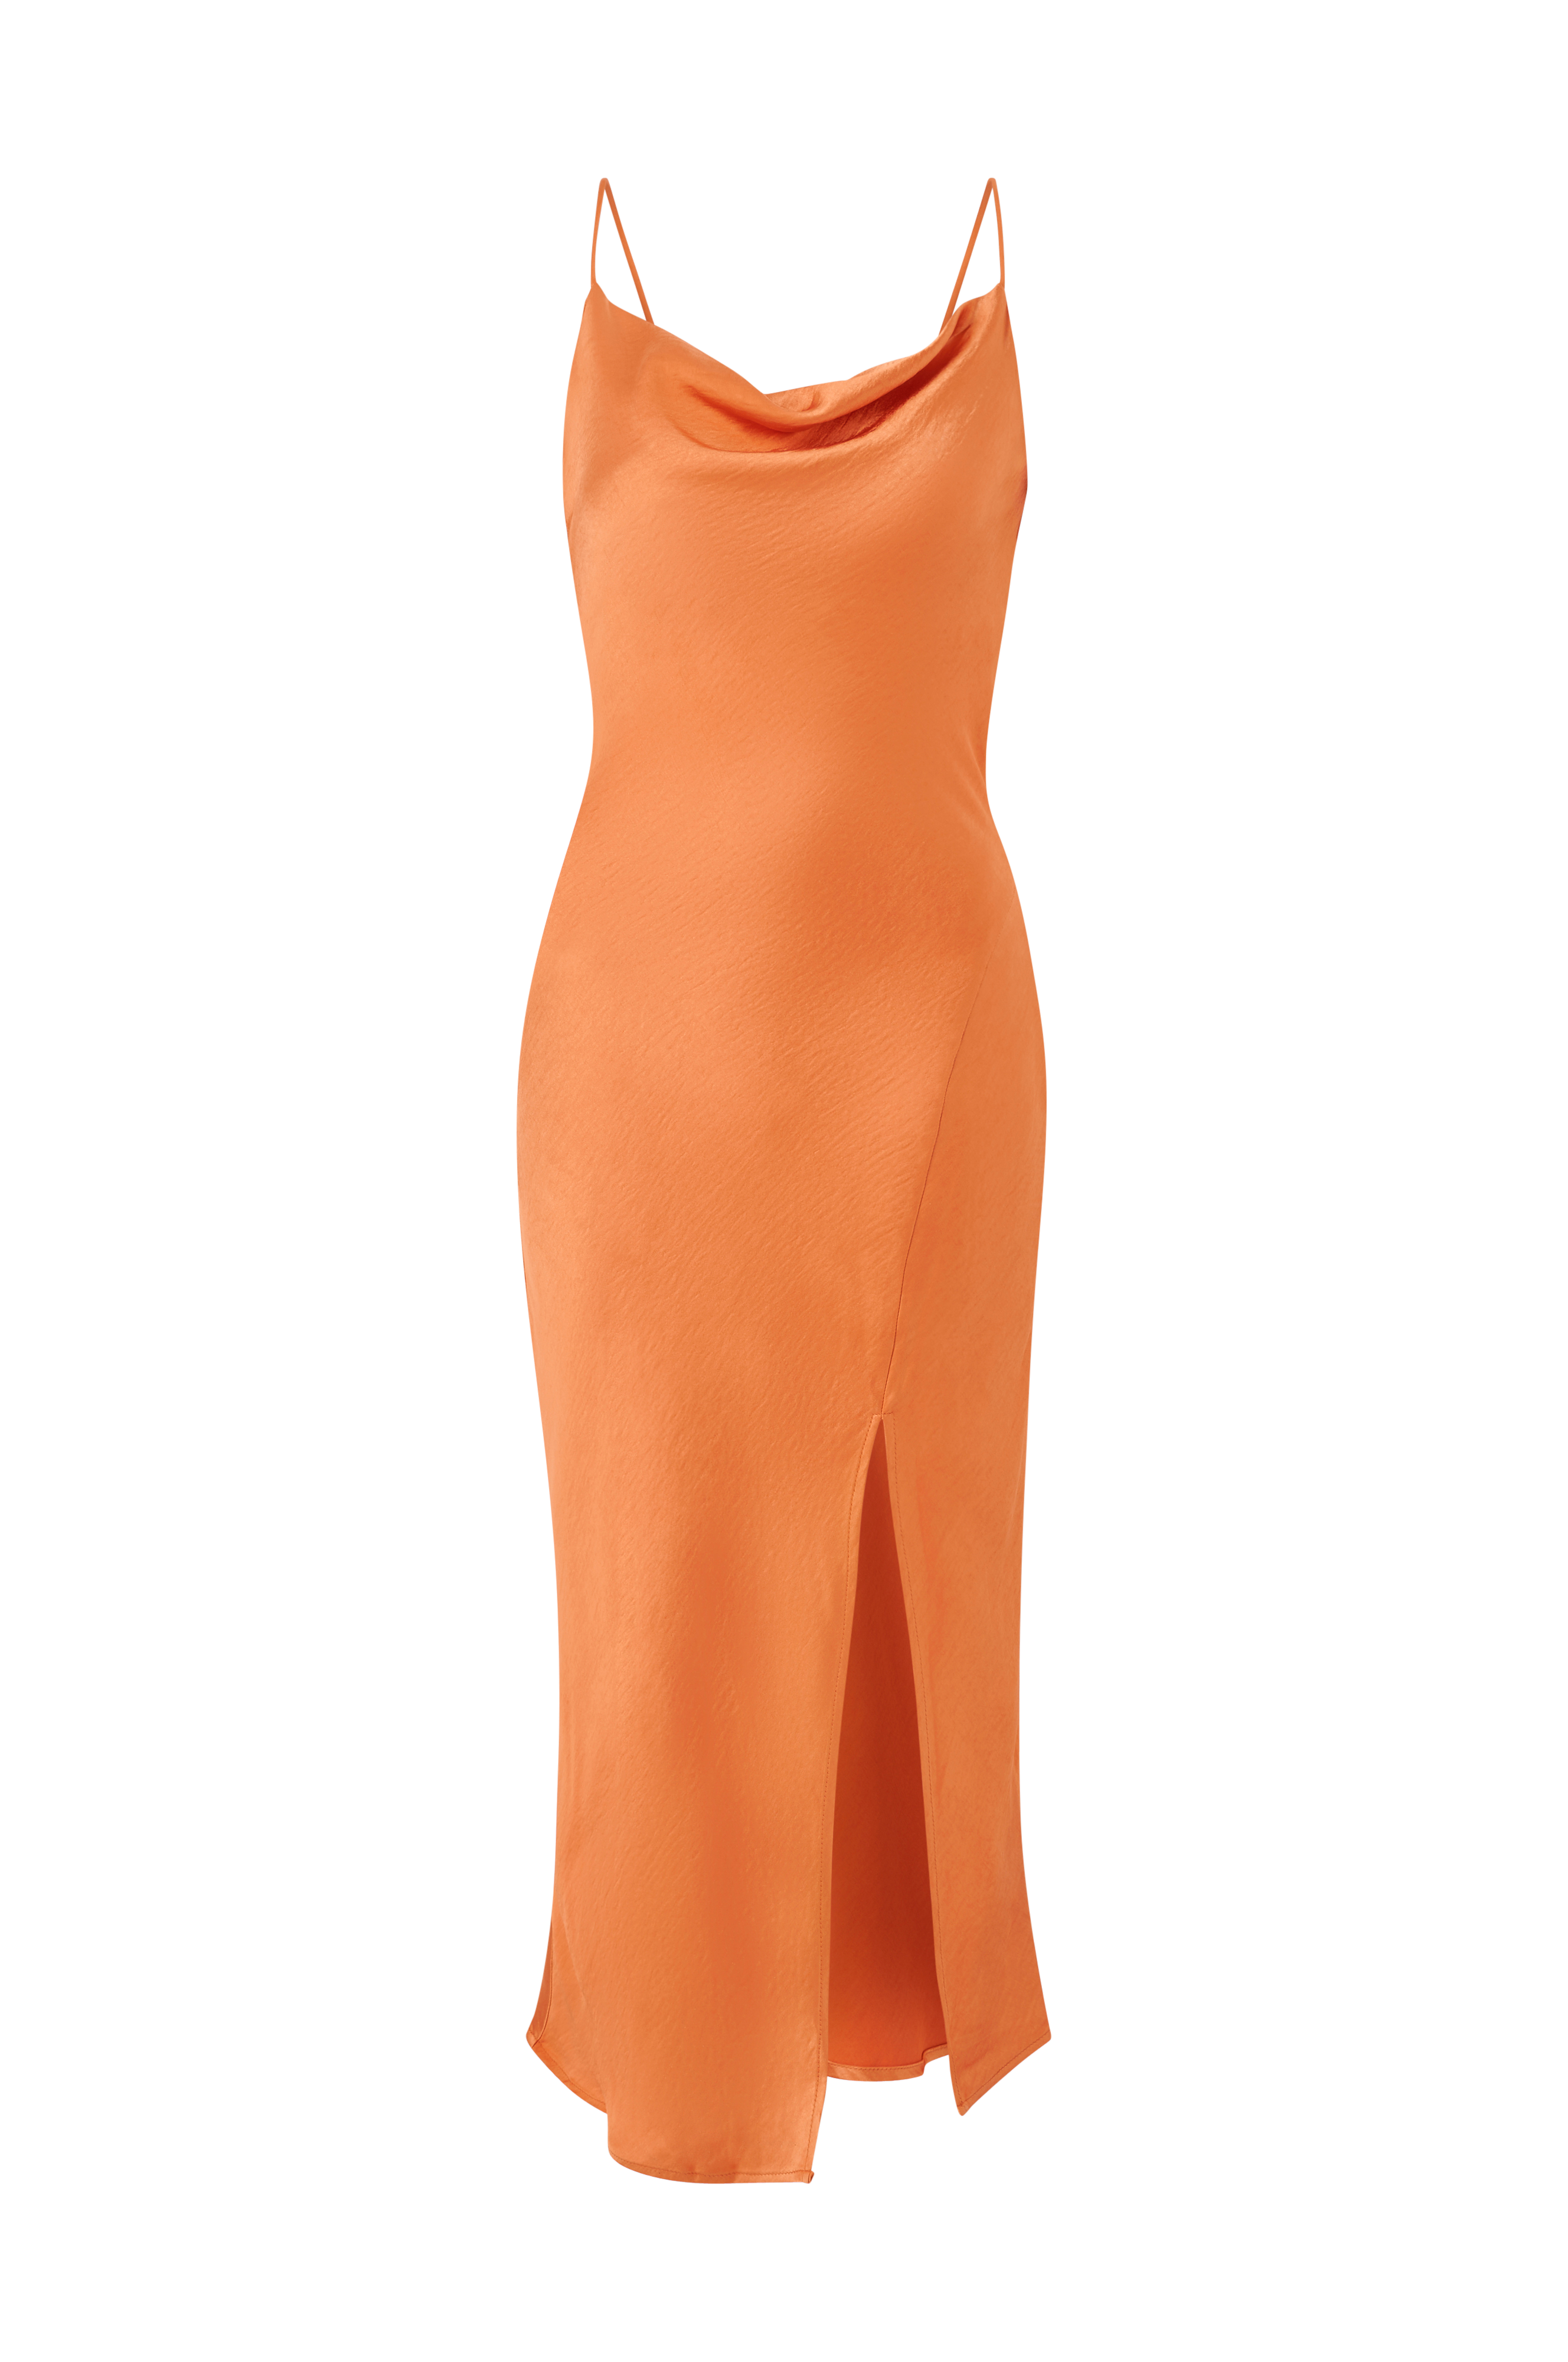 Gina kjole Sally Cowl Neck Dress Orange - Festkjoler | Ellos.dk